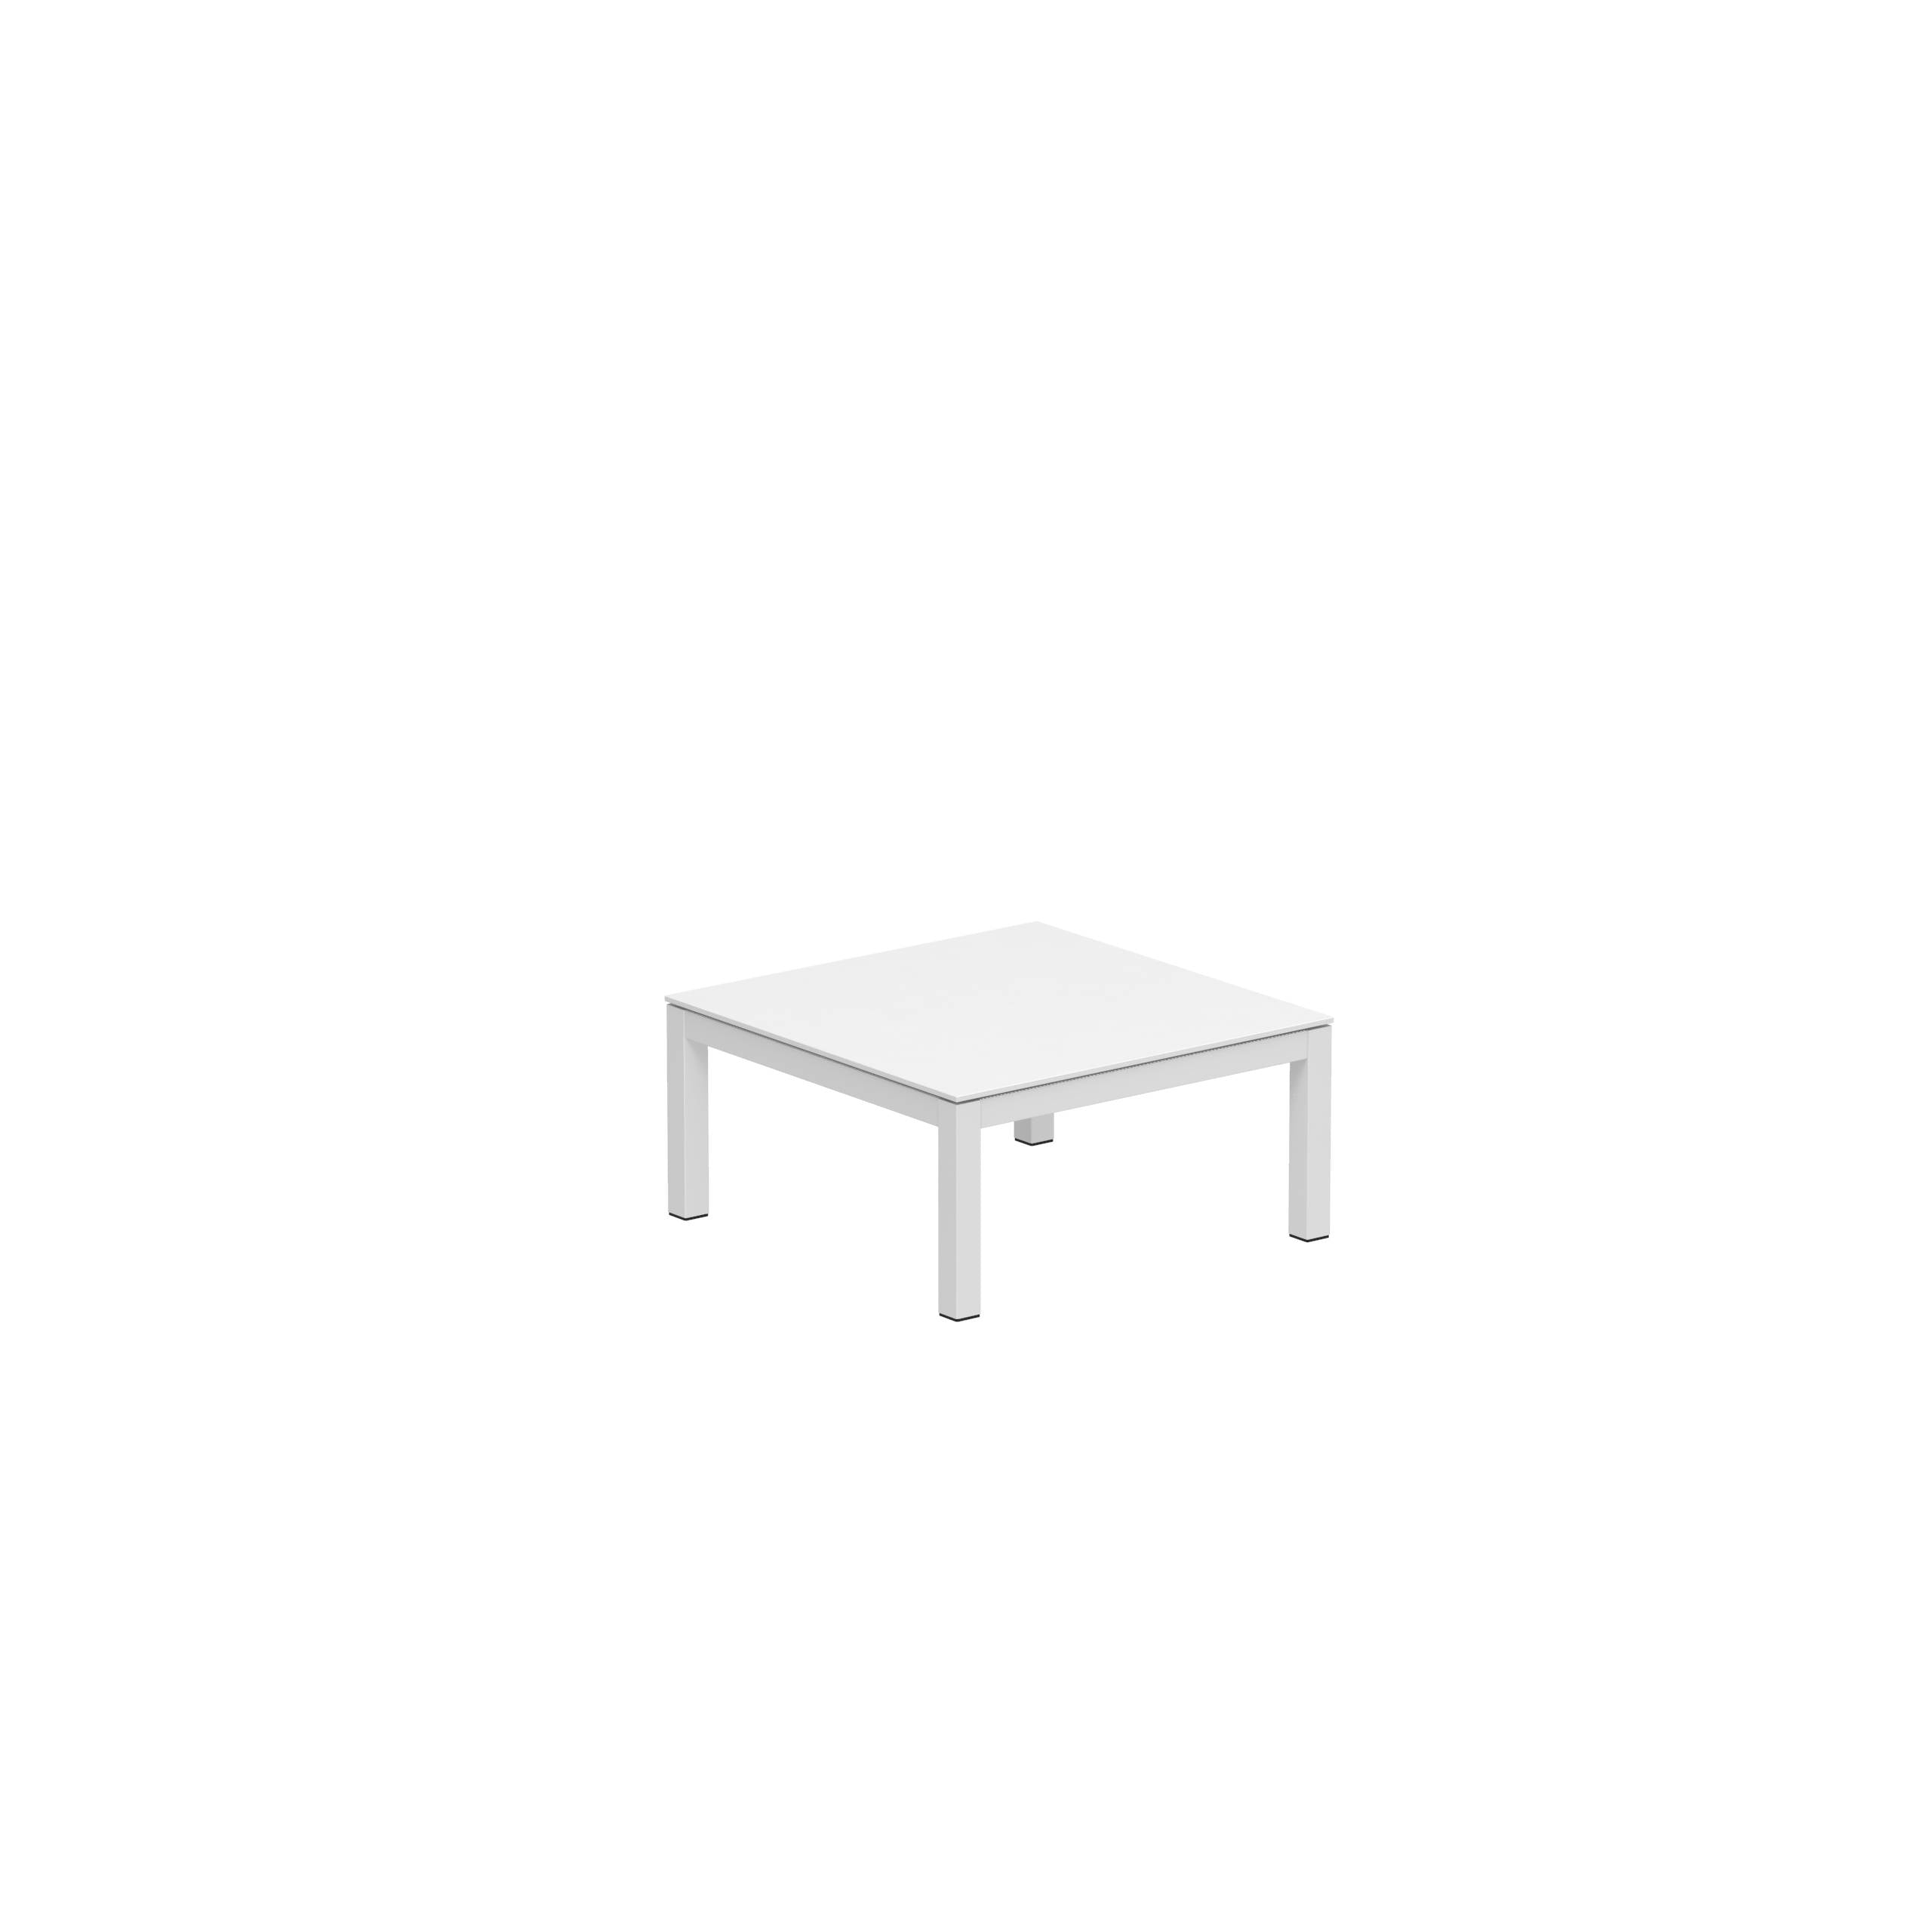 Taboela Low Table 80x80cm White + Ceramic Top White